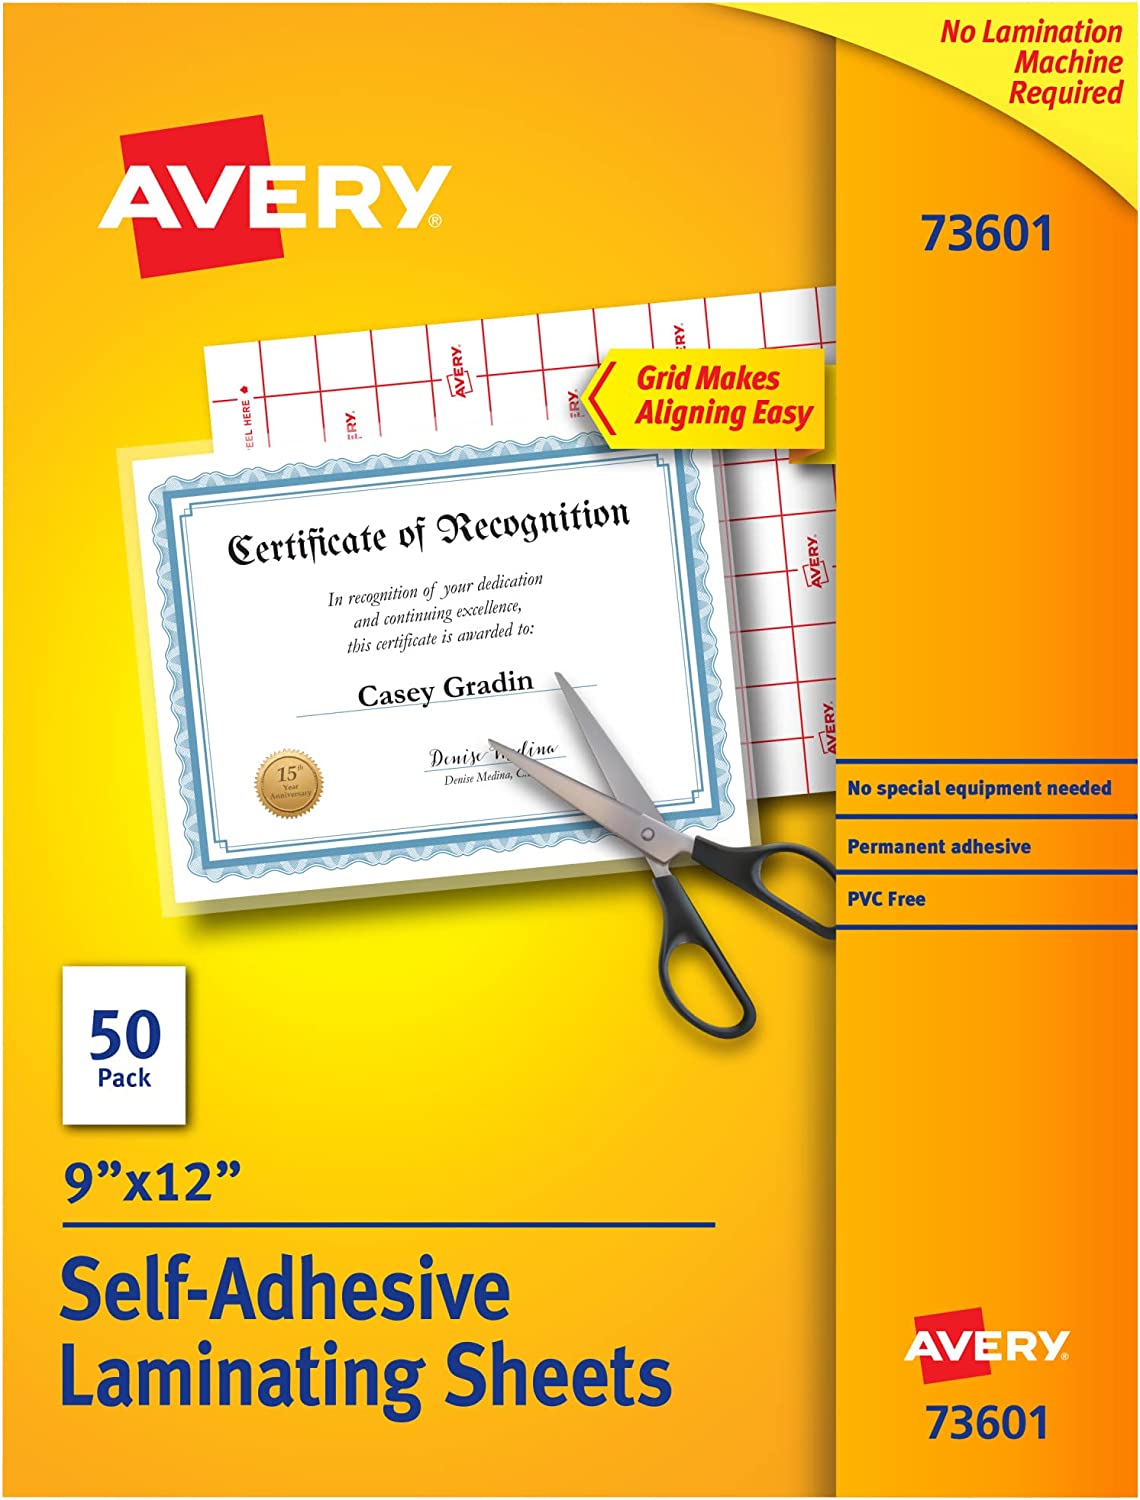 AVERY Acid Free Self-Adhesive Laminating Sheets, 50-Pack